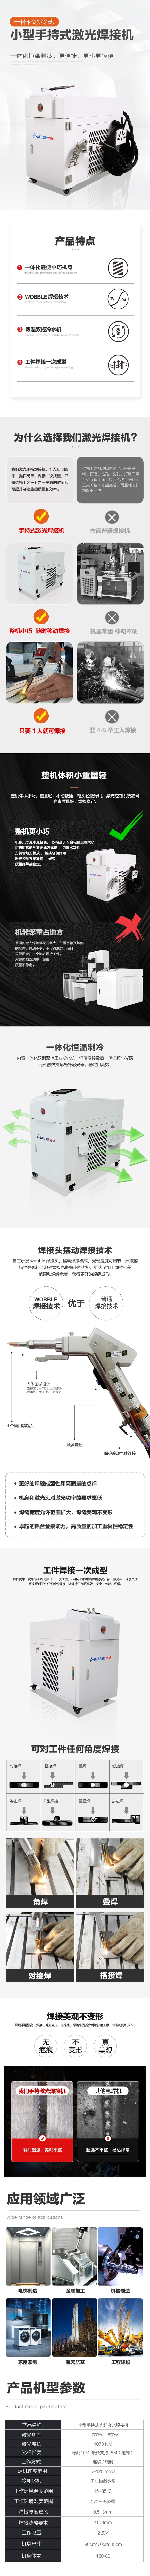 新款小型焊接机详情页_01.jpg